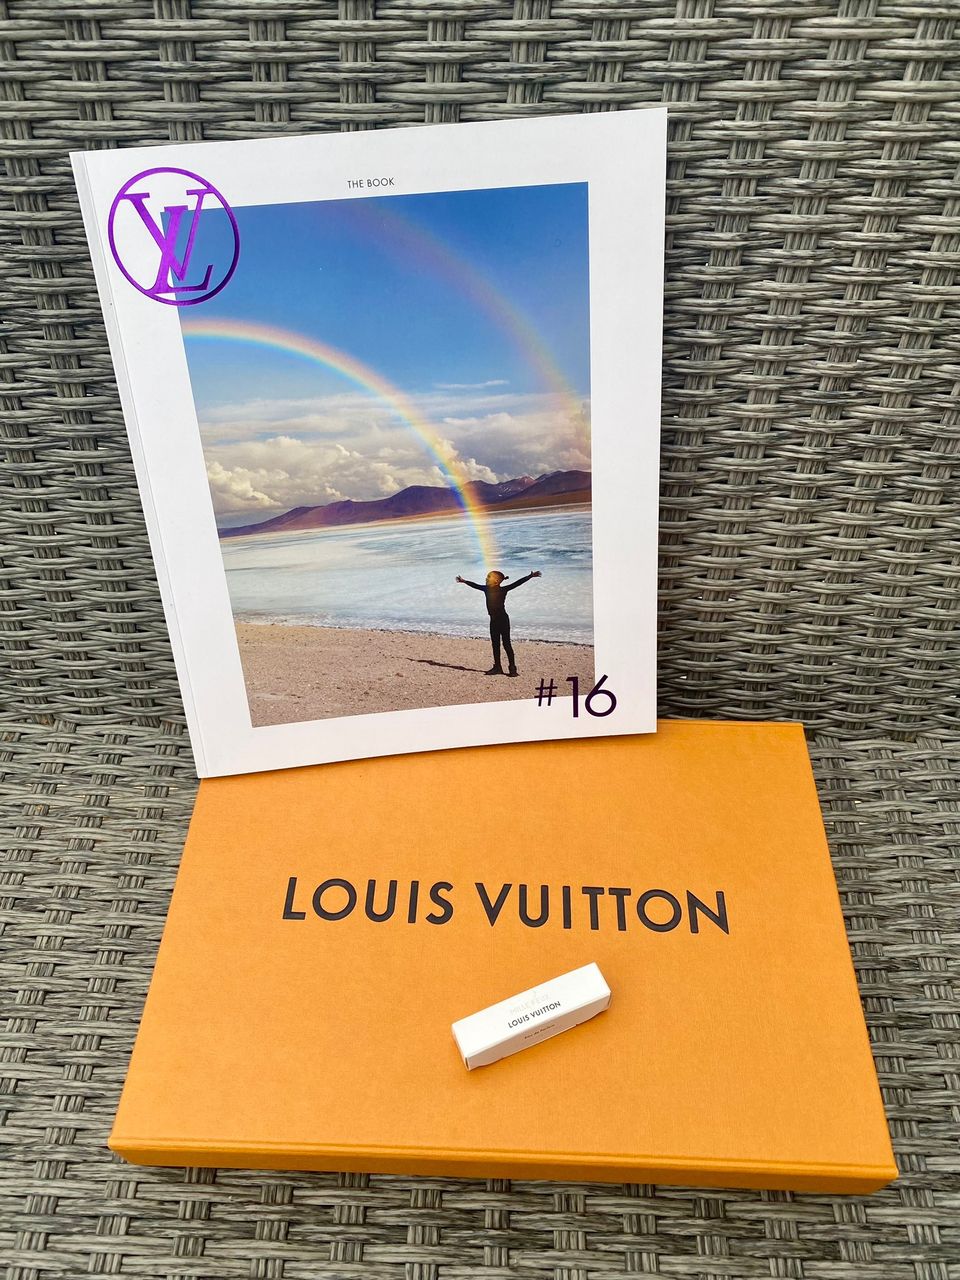 Louis Vuitton Säilytysrasia & The Book #16